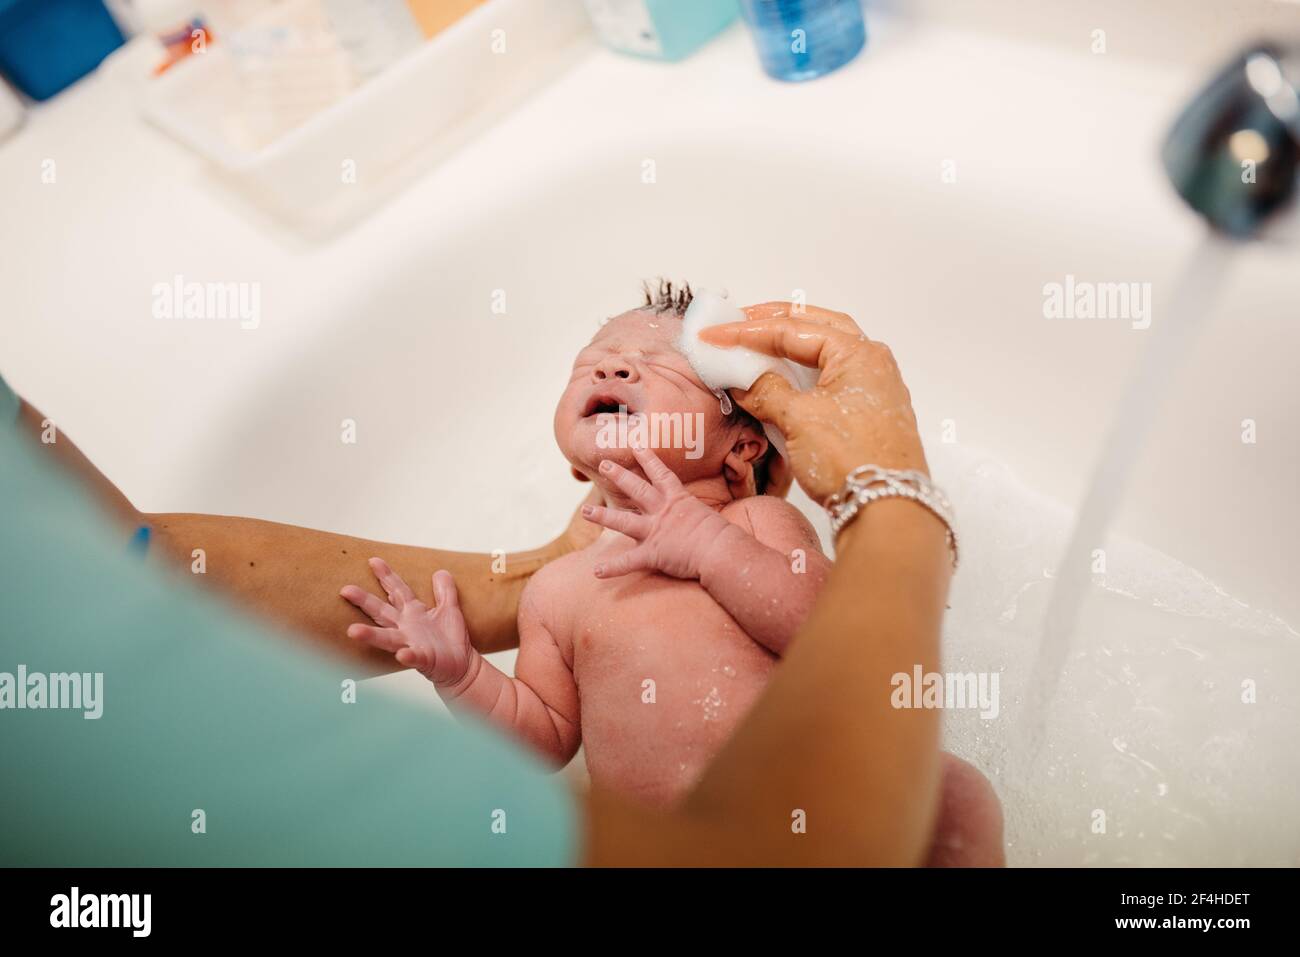 Alto ángulo de cosecha anónima enfermera con algodón dar esponja baño para un pequeño recién nacido en el hospital Fotografía de stock Alamy